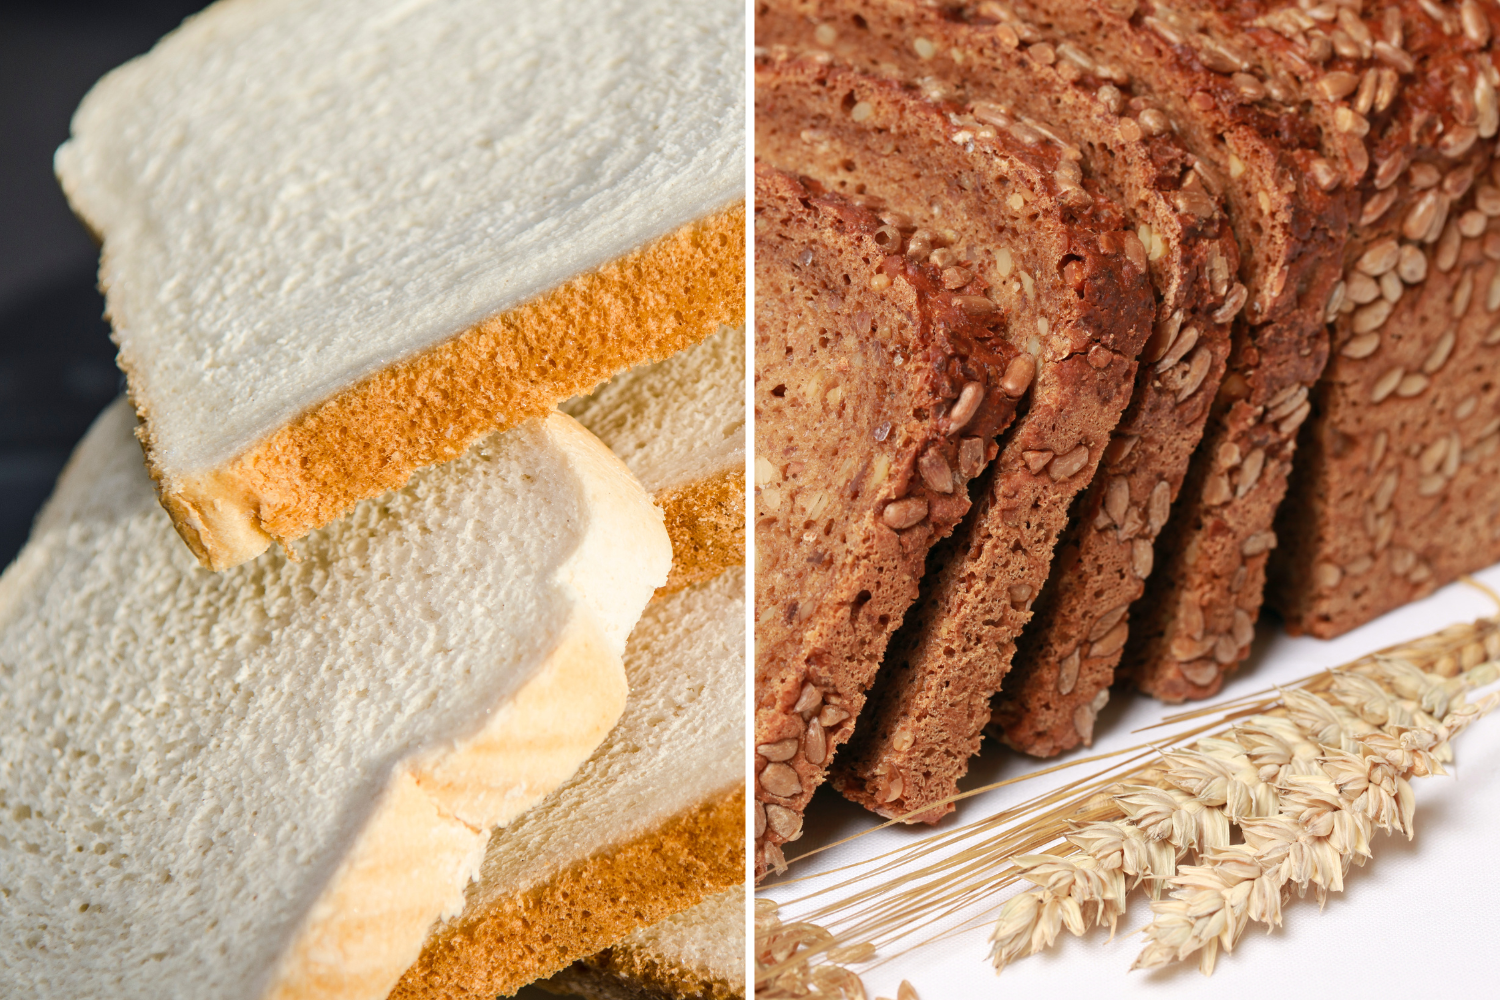 White bread vs whole grain bread